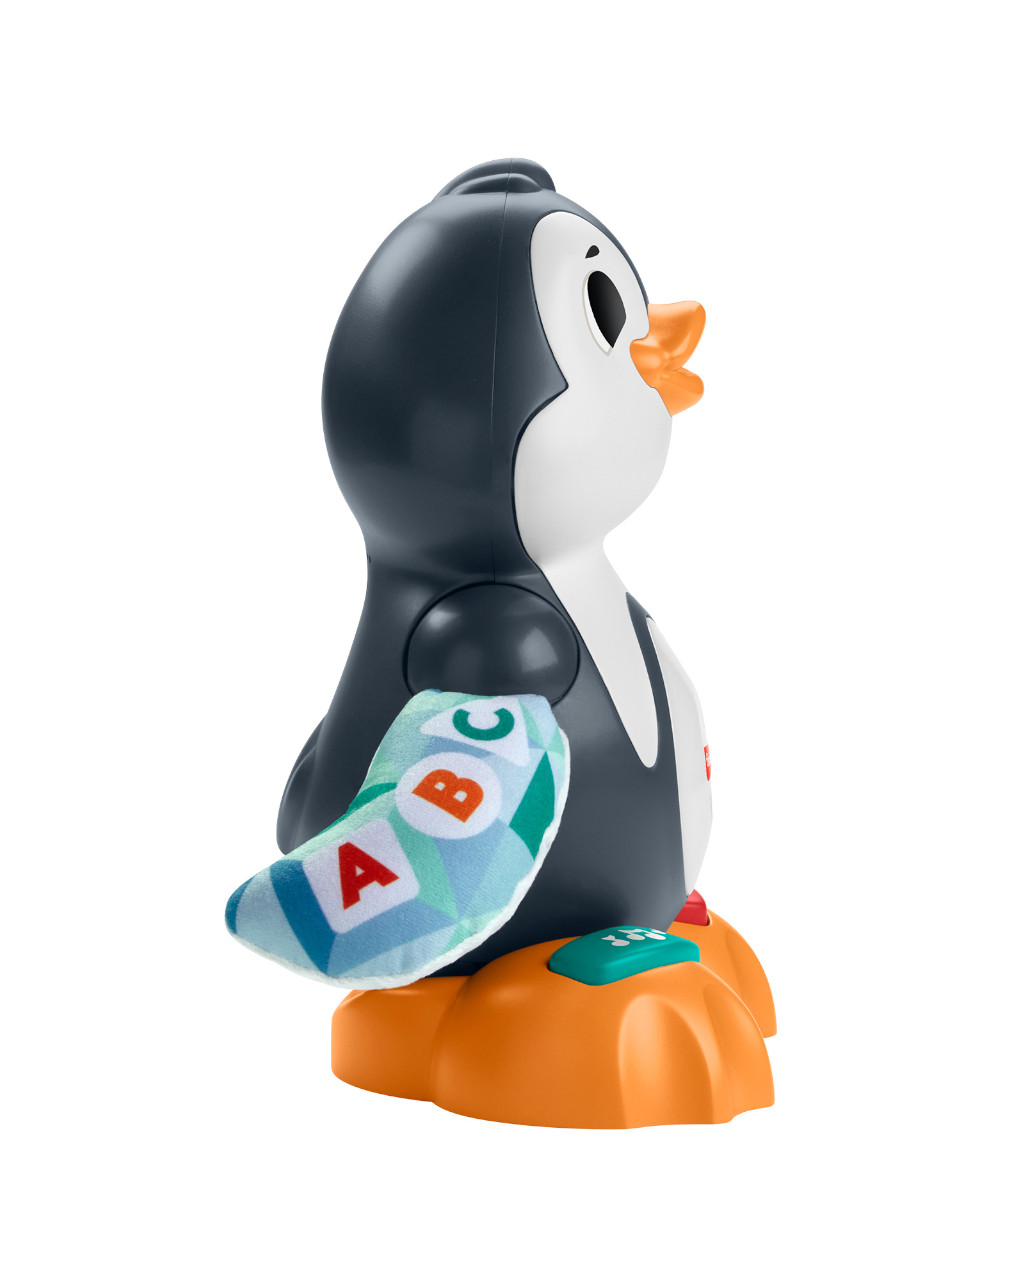 Hablame pino pingüino números y palabras 9+ meses - fisher price - Fisher-Price